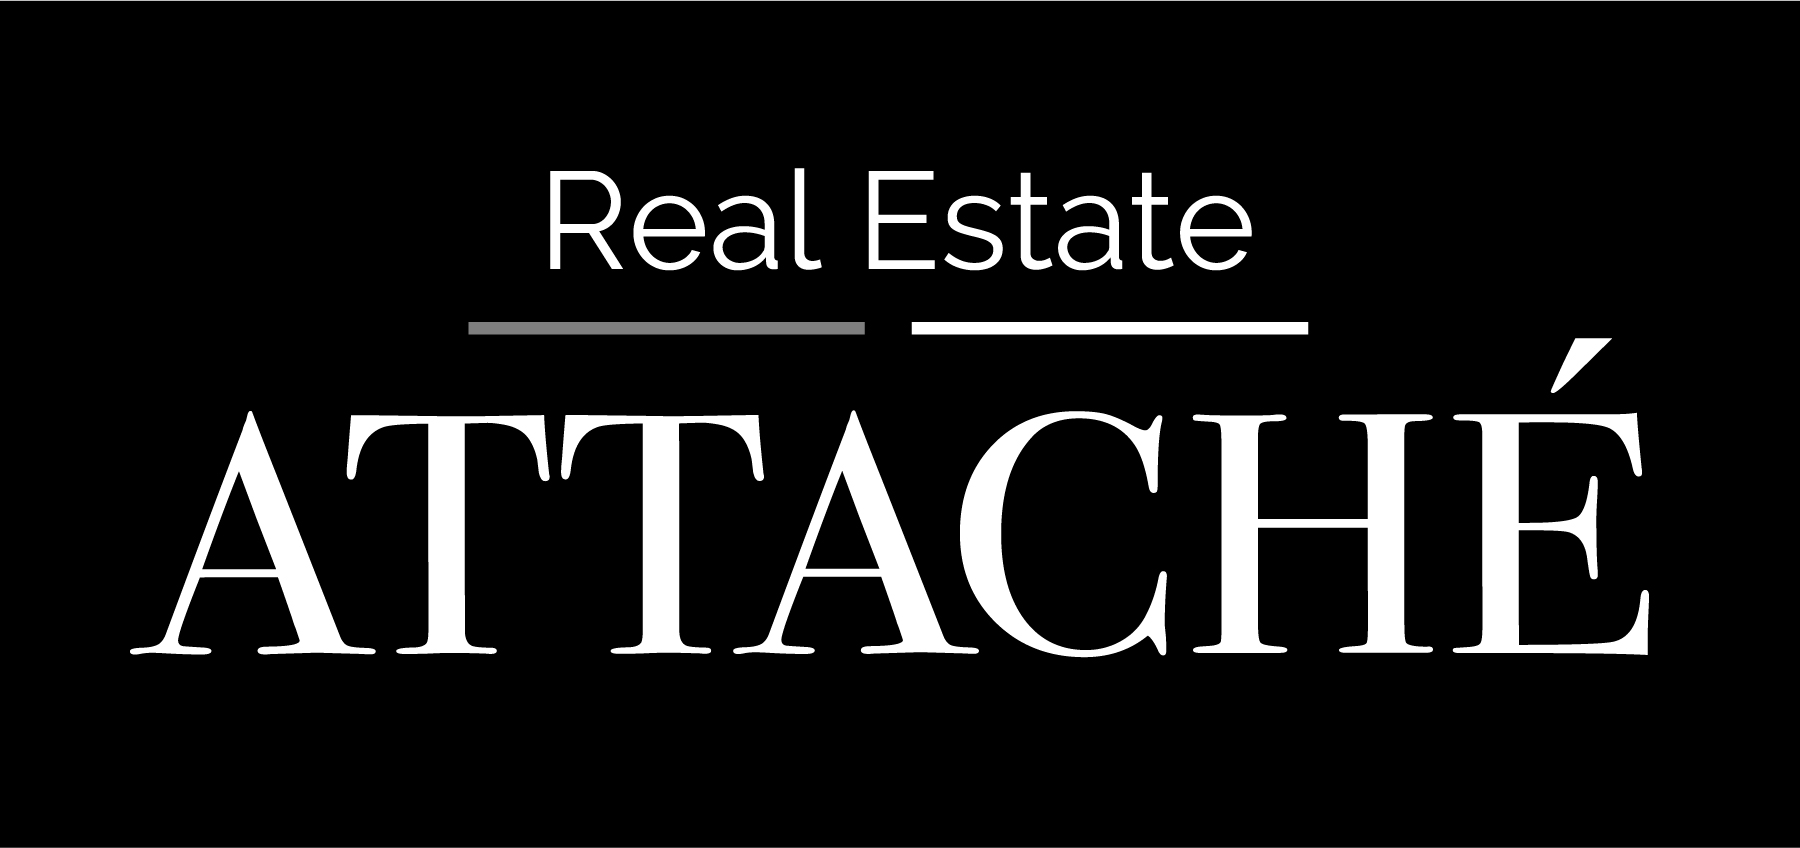 Real Estate Attache'